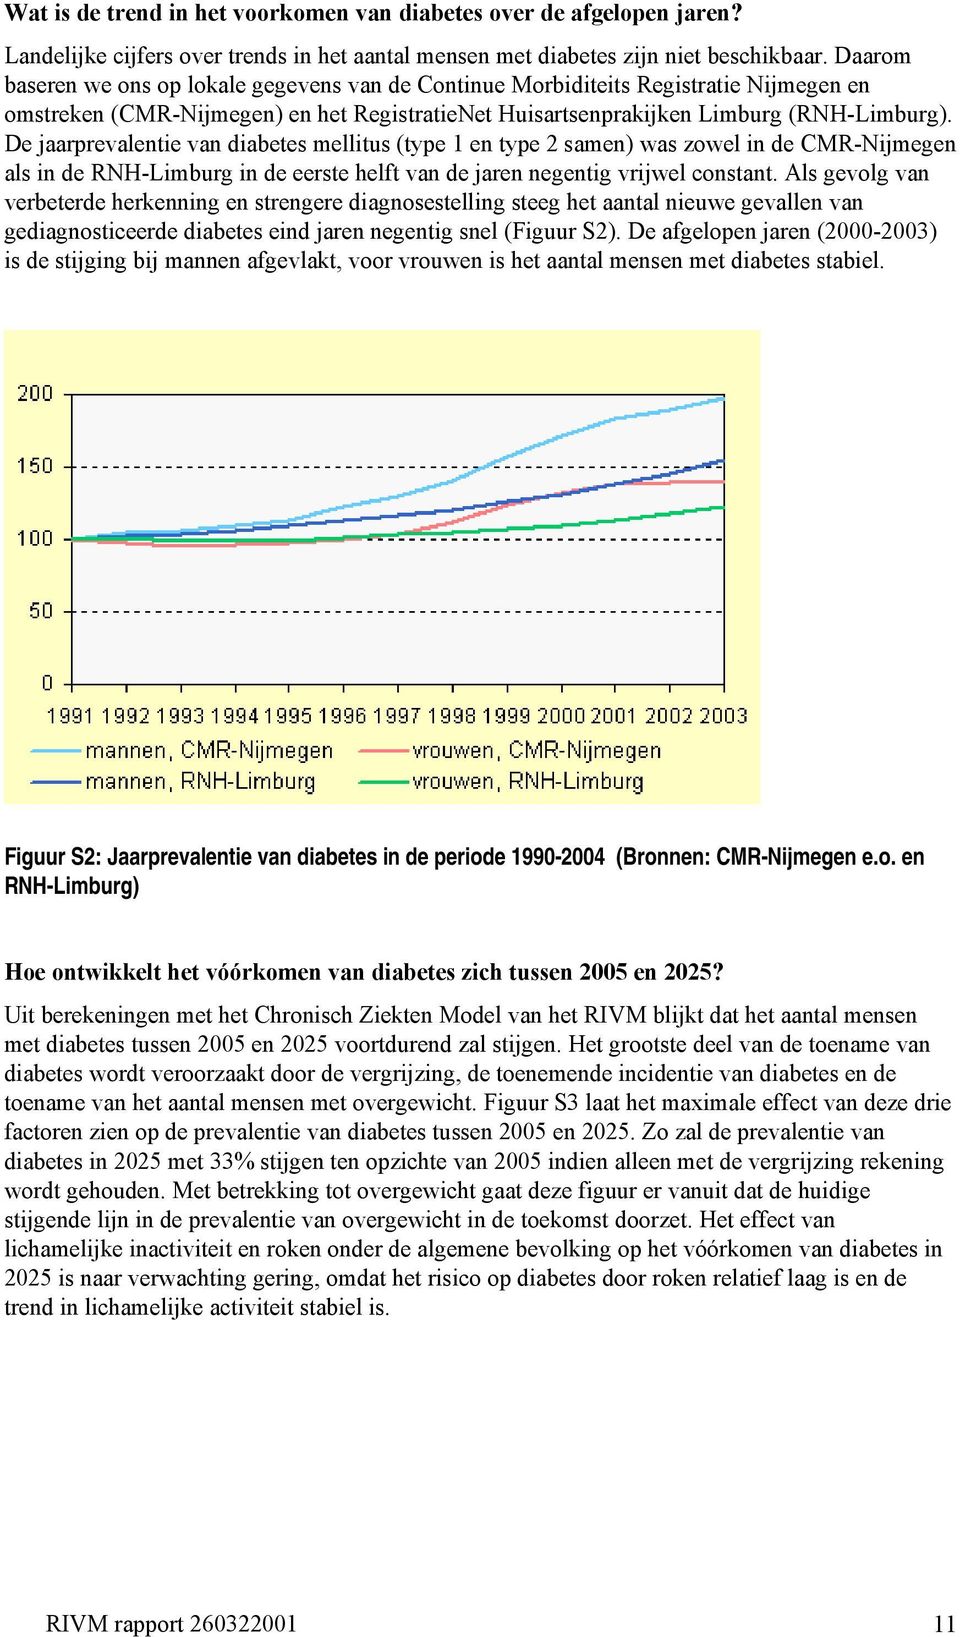 De jaarprevalentie van diabetes mellitus (type 1 en type 2 samen) was zowel in de CMR-Nijmegen als in de RNH-Limburg in de eerste helft van de jaren negentig vrijwel constant.